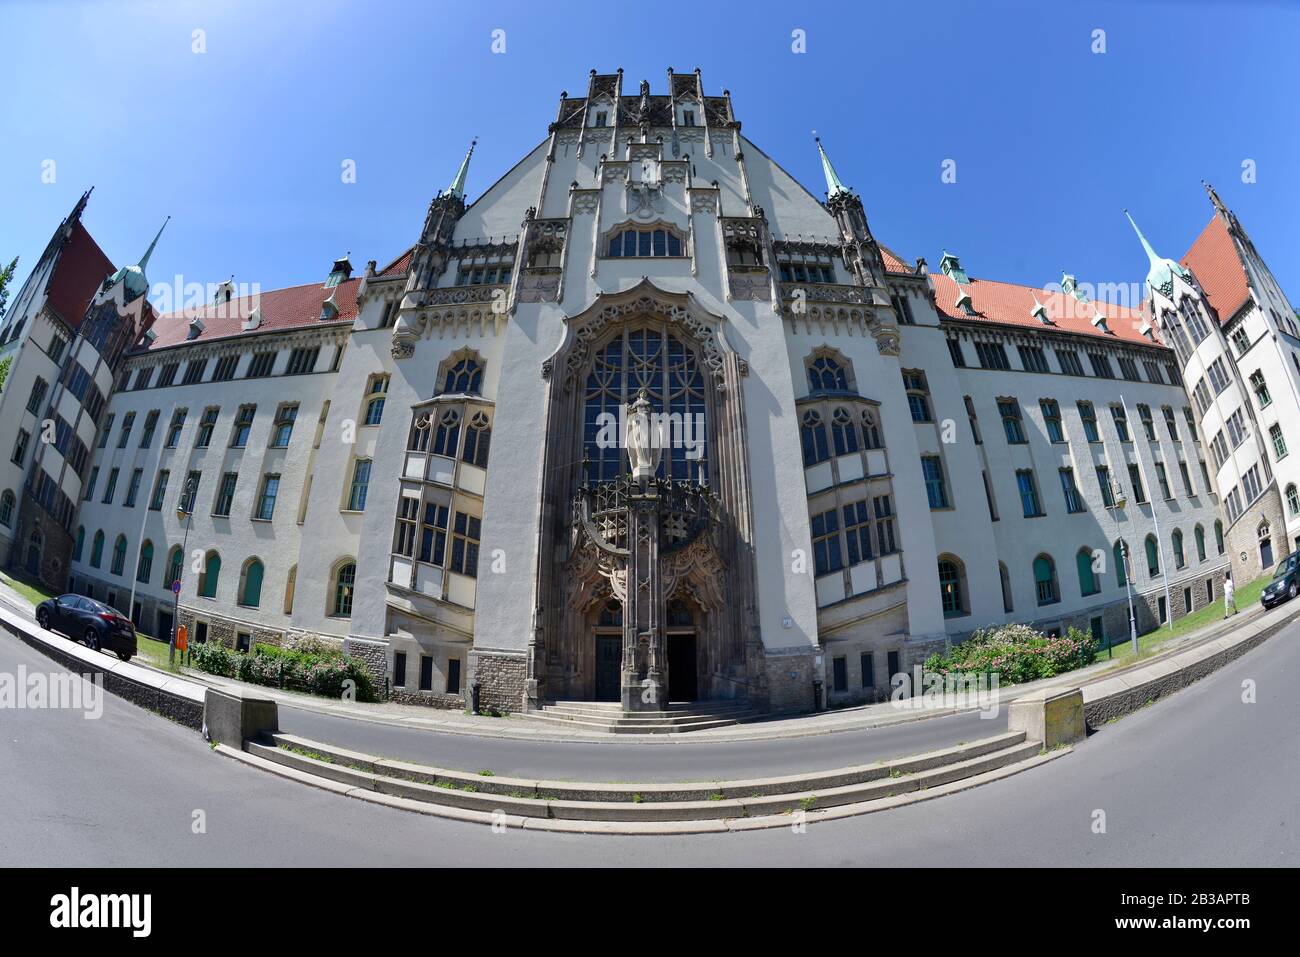 Amtsgericht Mariage, Bahnhofstraße, Gesundbrunnen, Mitte, Berlin, Deutschland Banque D'Images